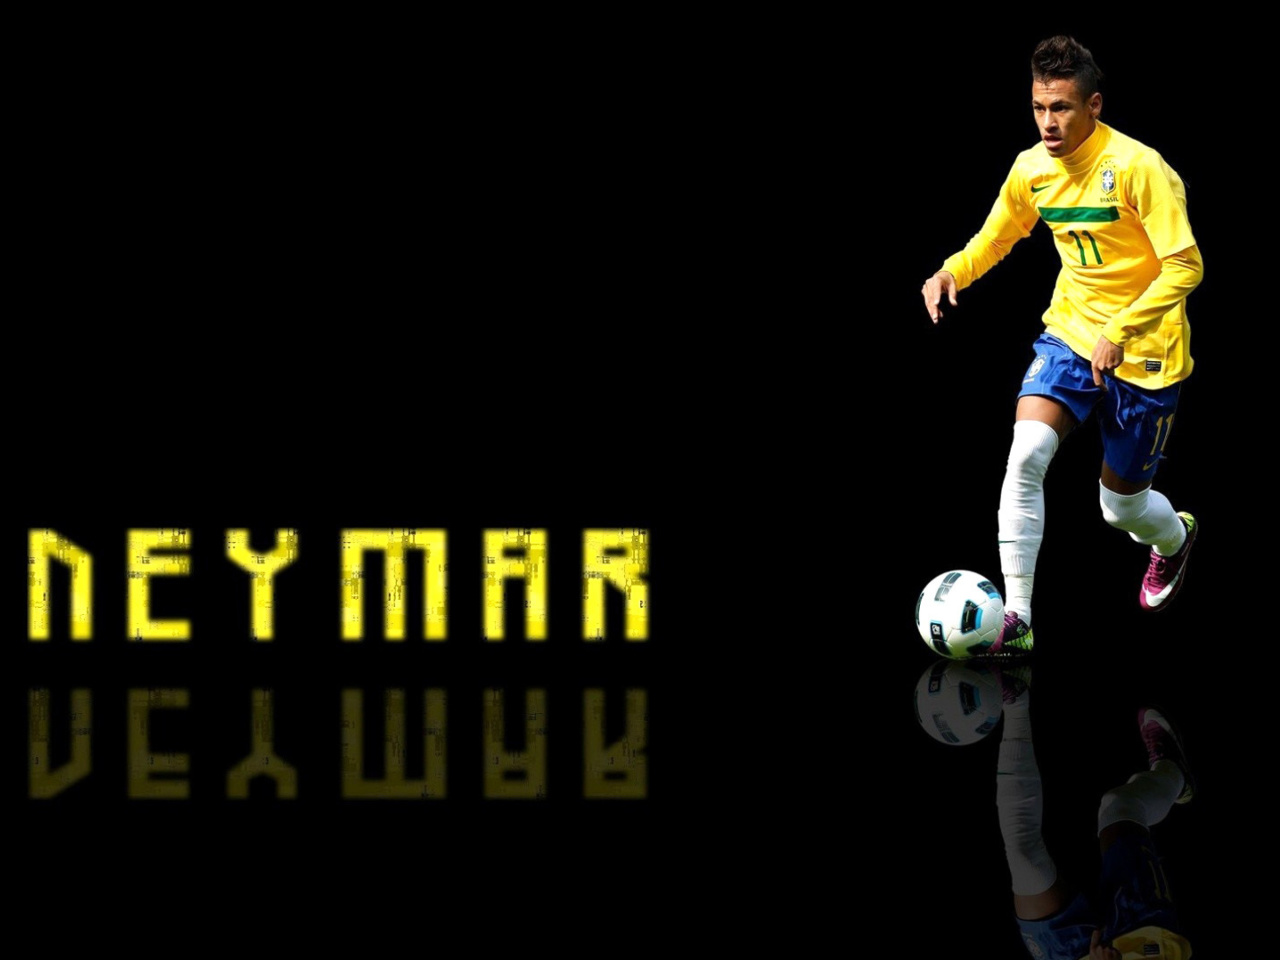 Neymar Brazilian Professional Footballer wallpaper 1280x960